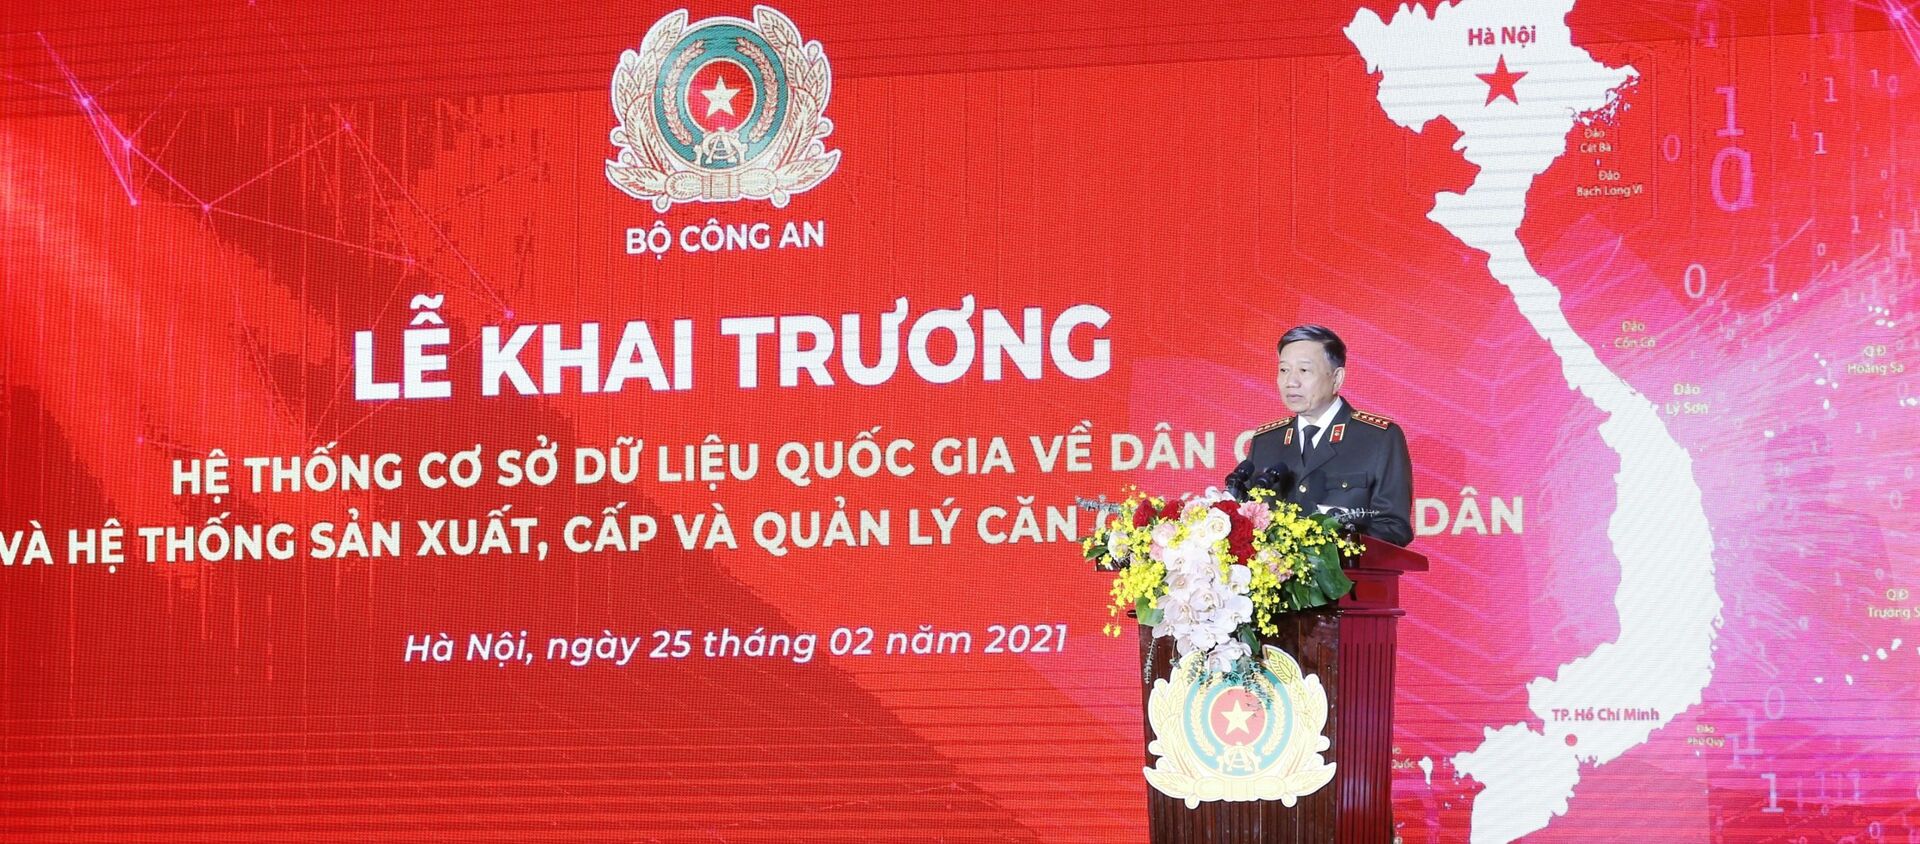 Bộ trưởng Bộ Công an Tô Lâm phát biểu.  - Sputnik Việt Nam, 1920, 26.02.2021